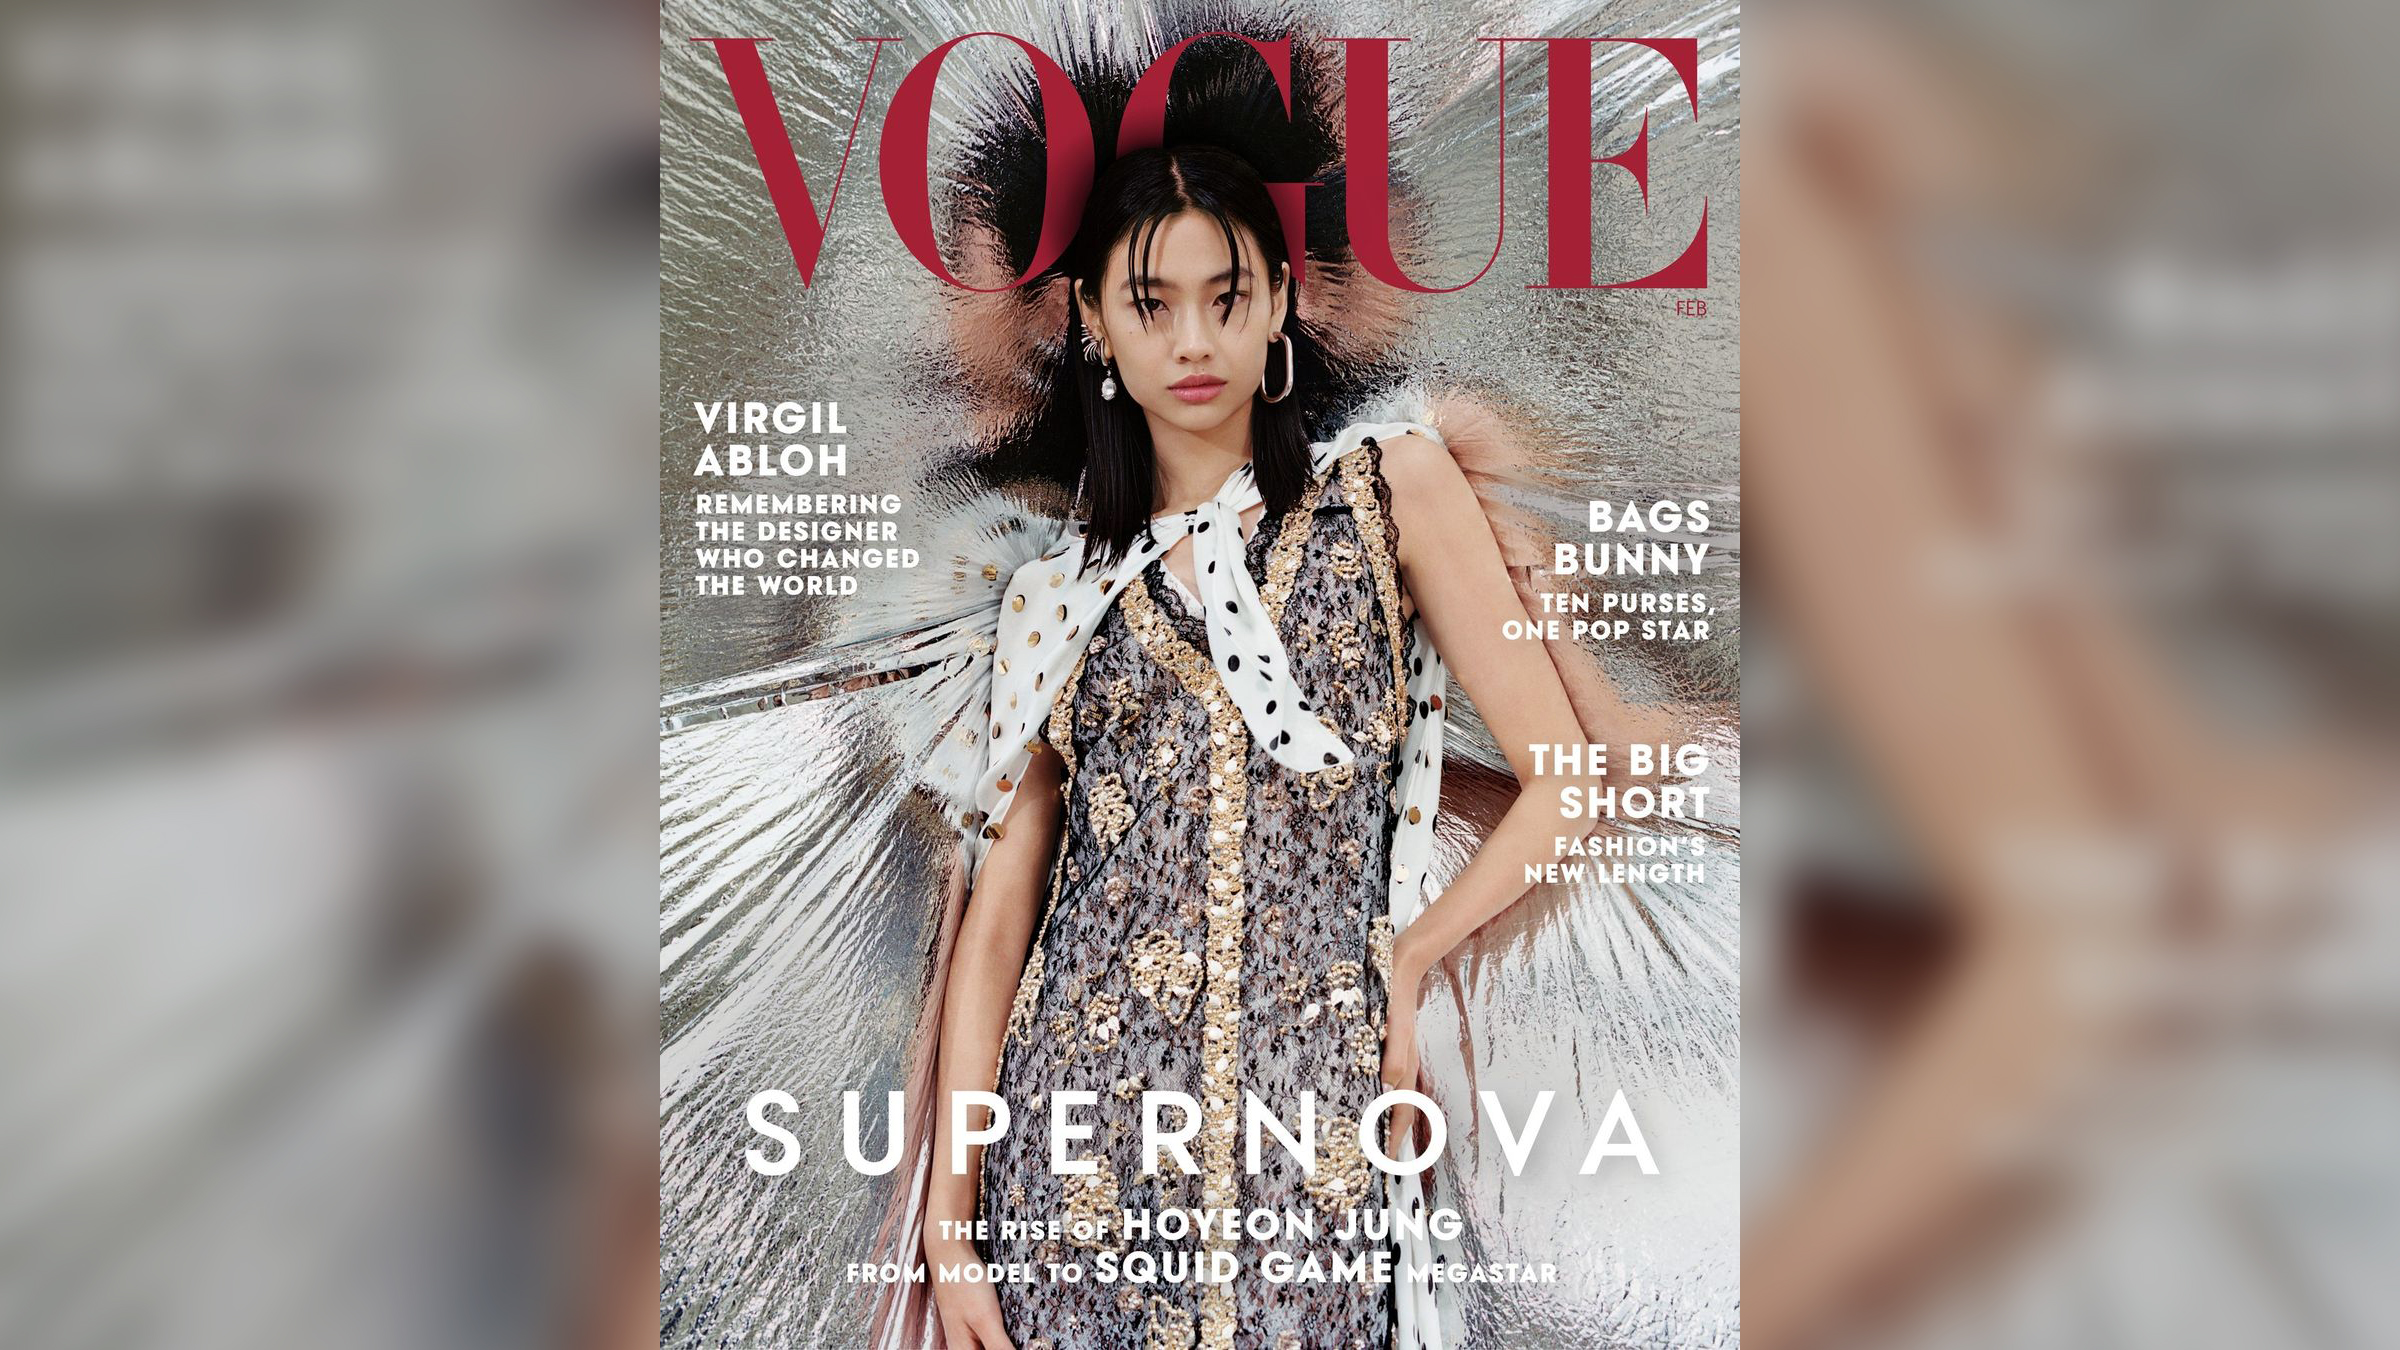 Vogue korea